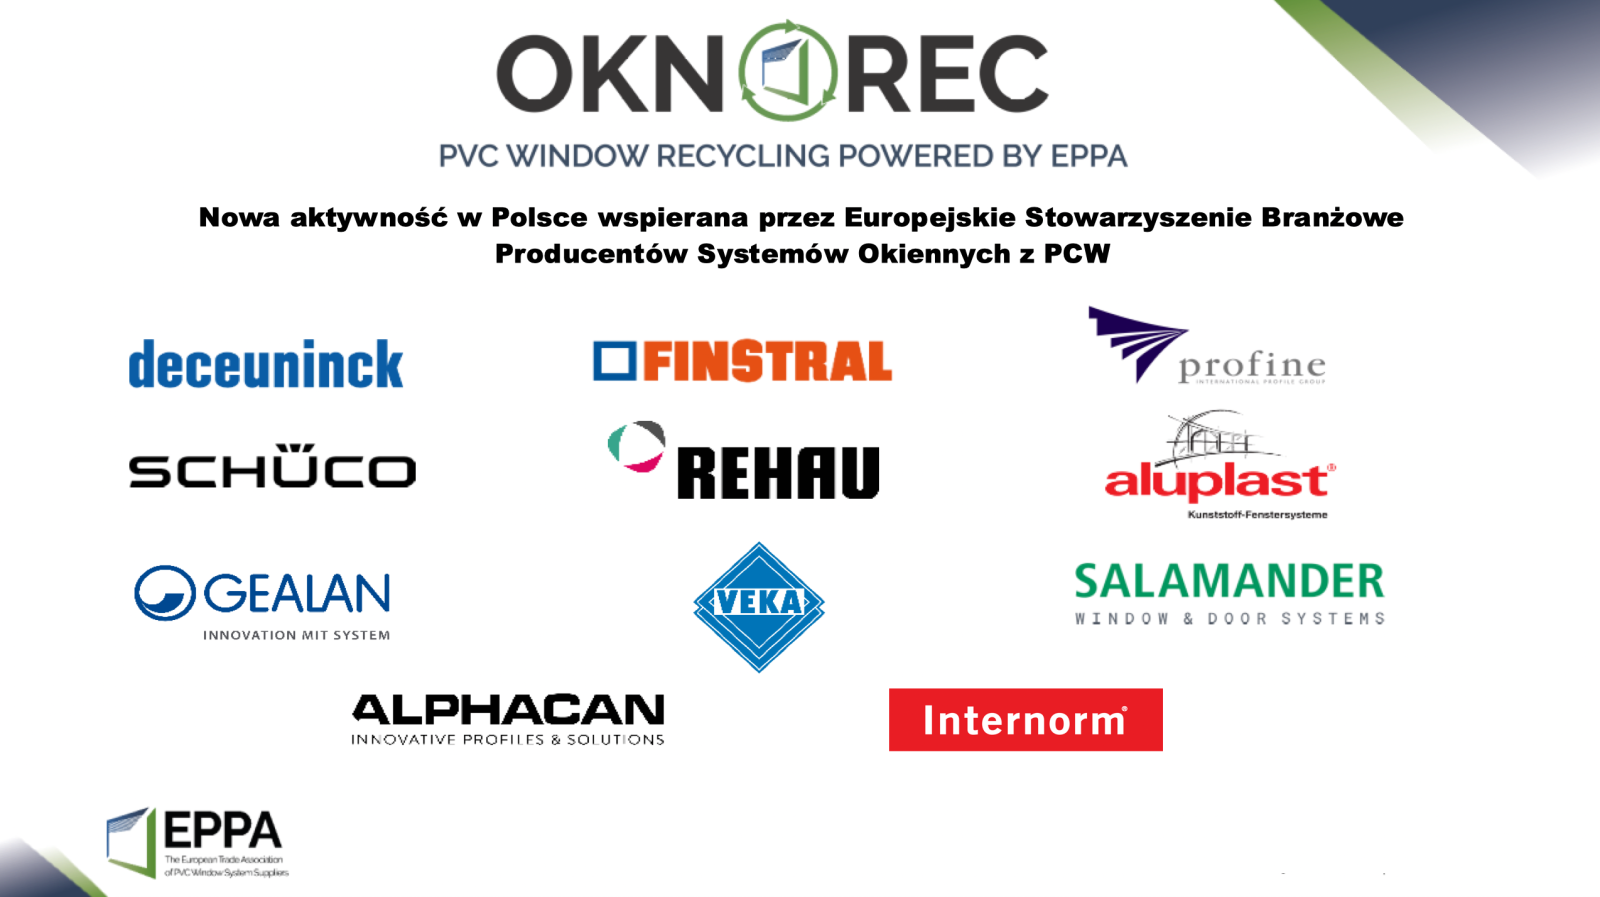 EPPA z siedzibą w Brukseli zapewnia wspólną platformę łączącą działania krajowe w dziedzinie technologii okien z PVC, recyklingu, środowiska i spraw publicznych. 